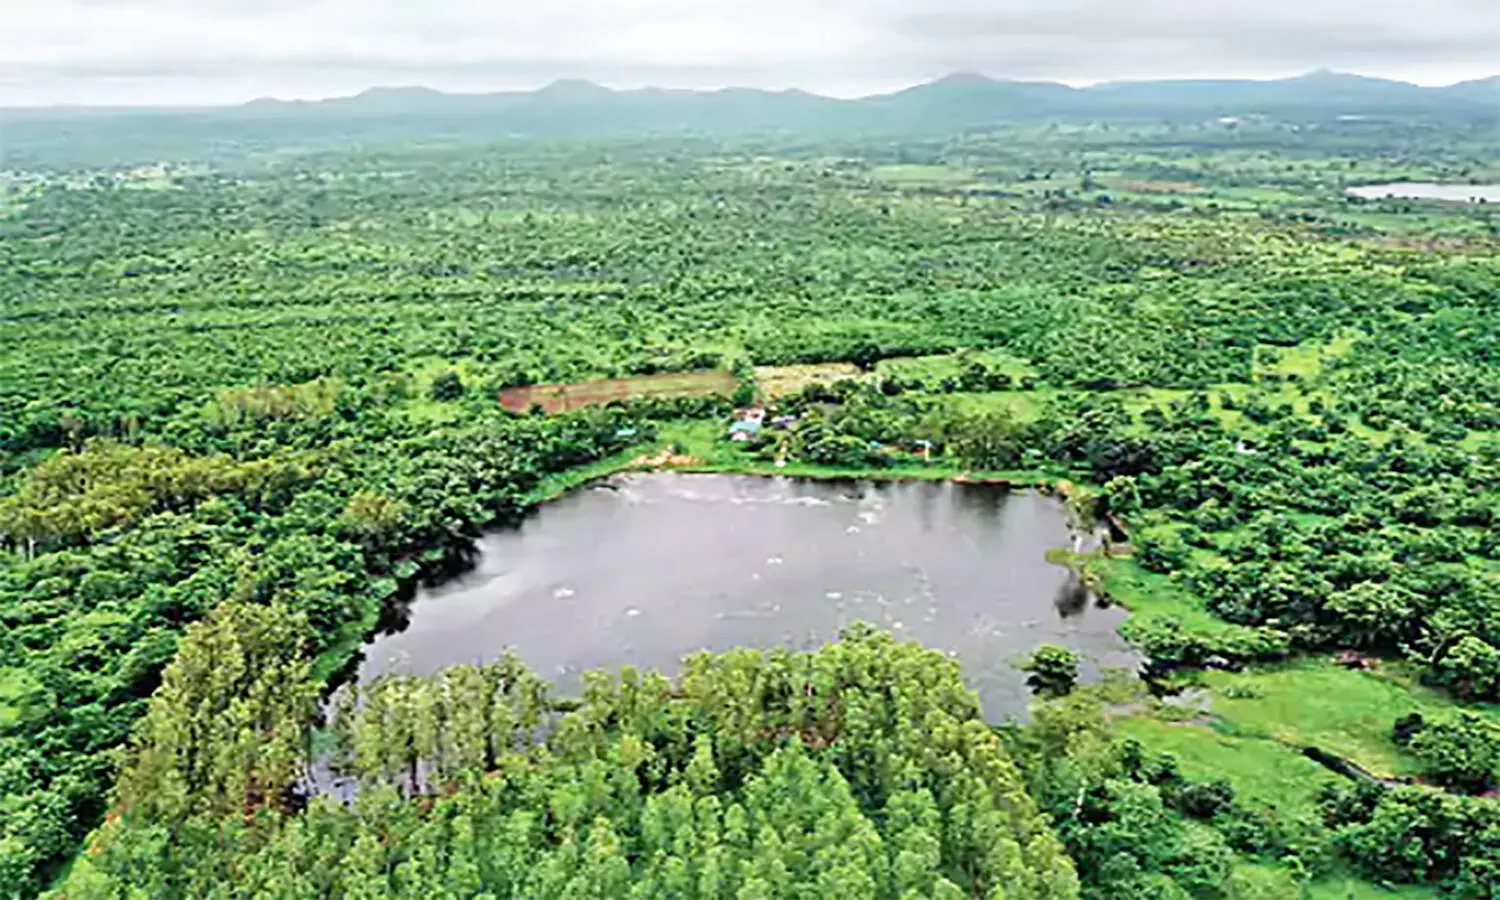 Miyawaki Method: मियावाकी पद्धति क्या है? जिससे एमपी के इंदौर में महज दो वर्ष में तैयार हो गया घना जंगल